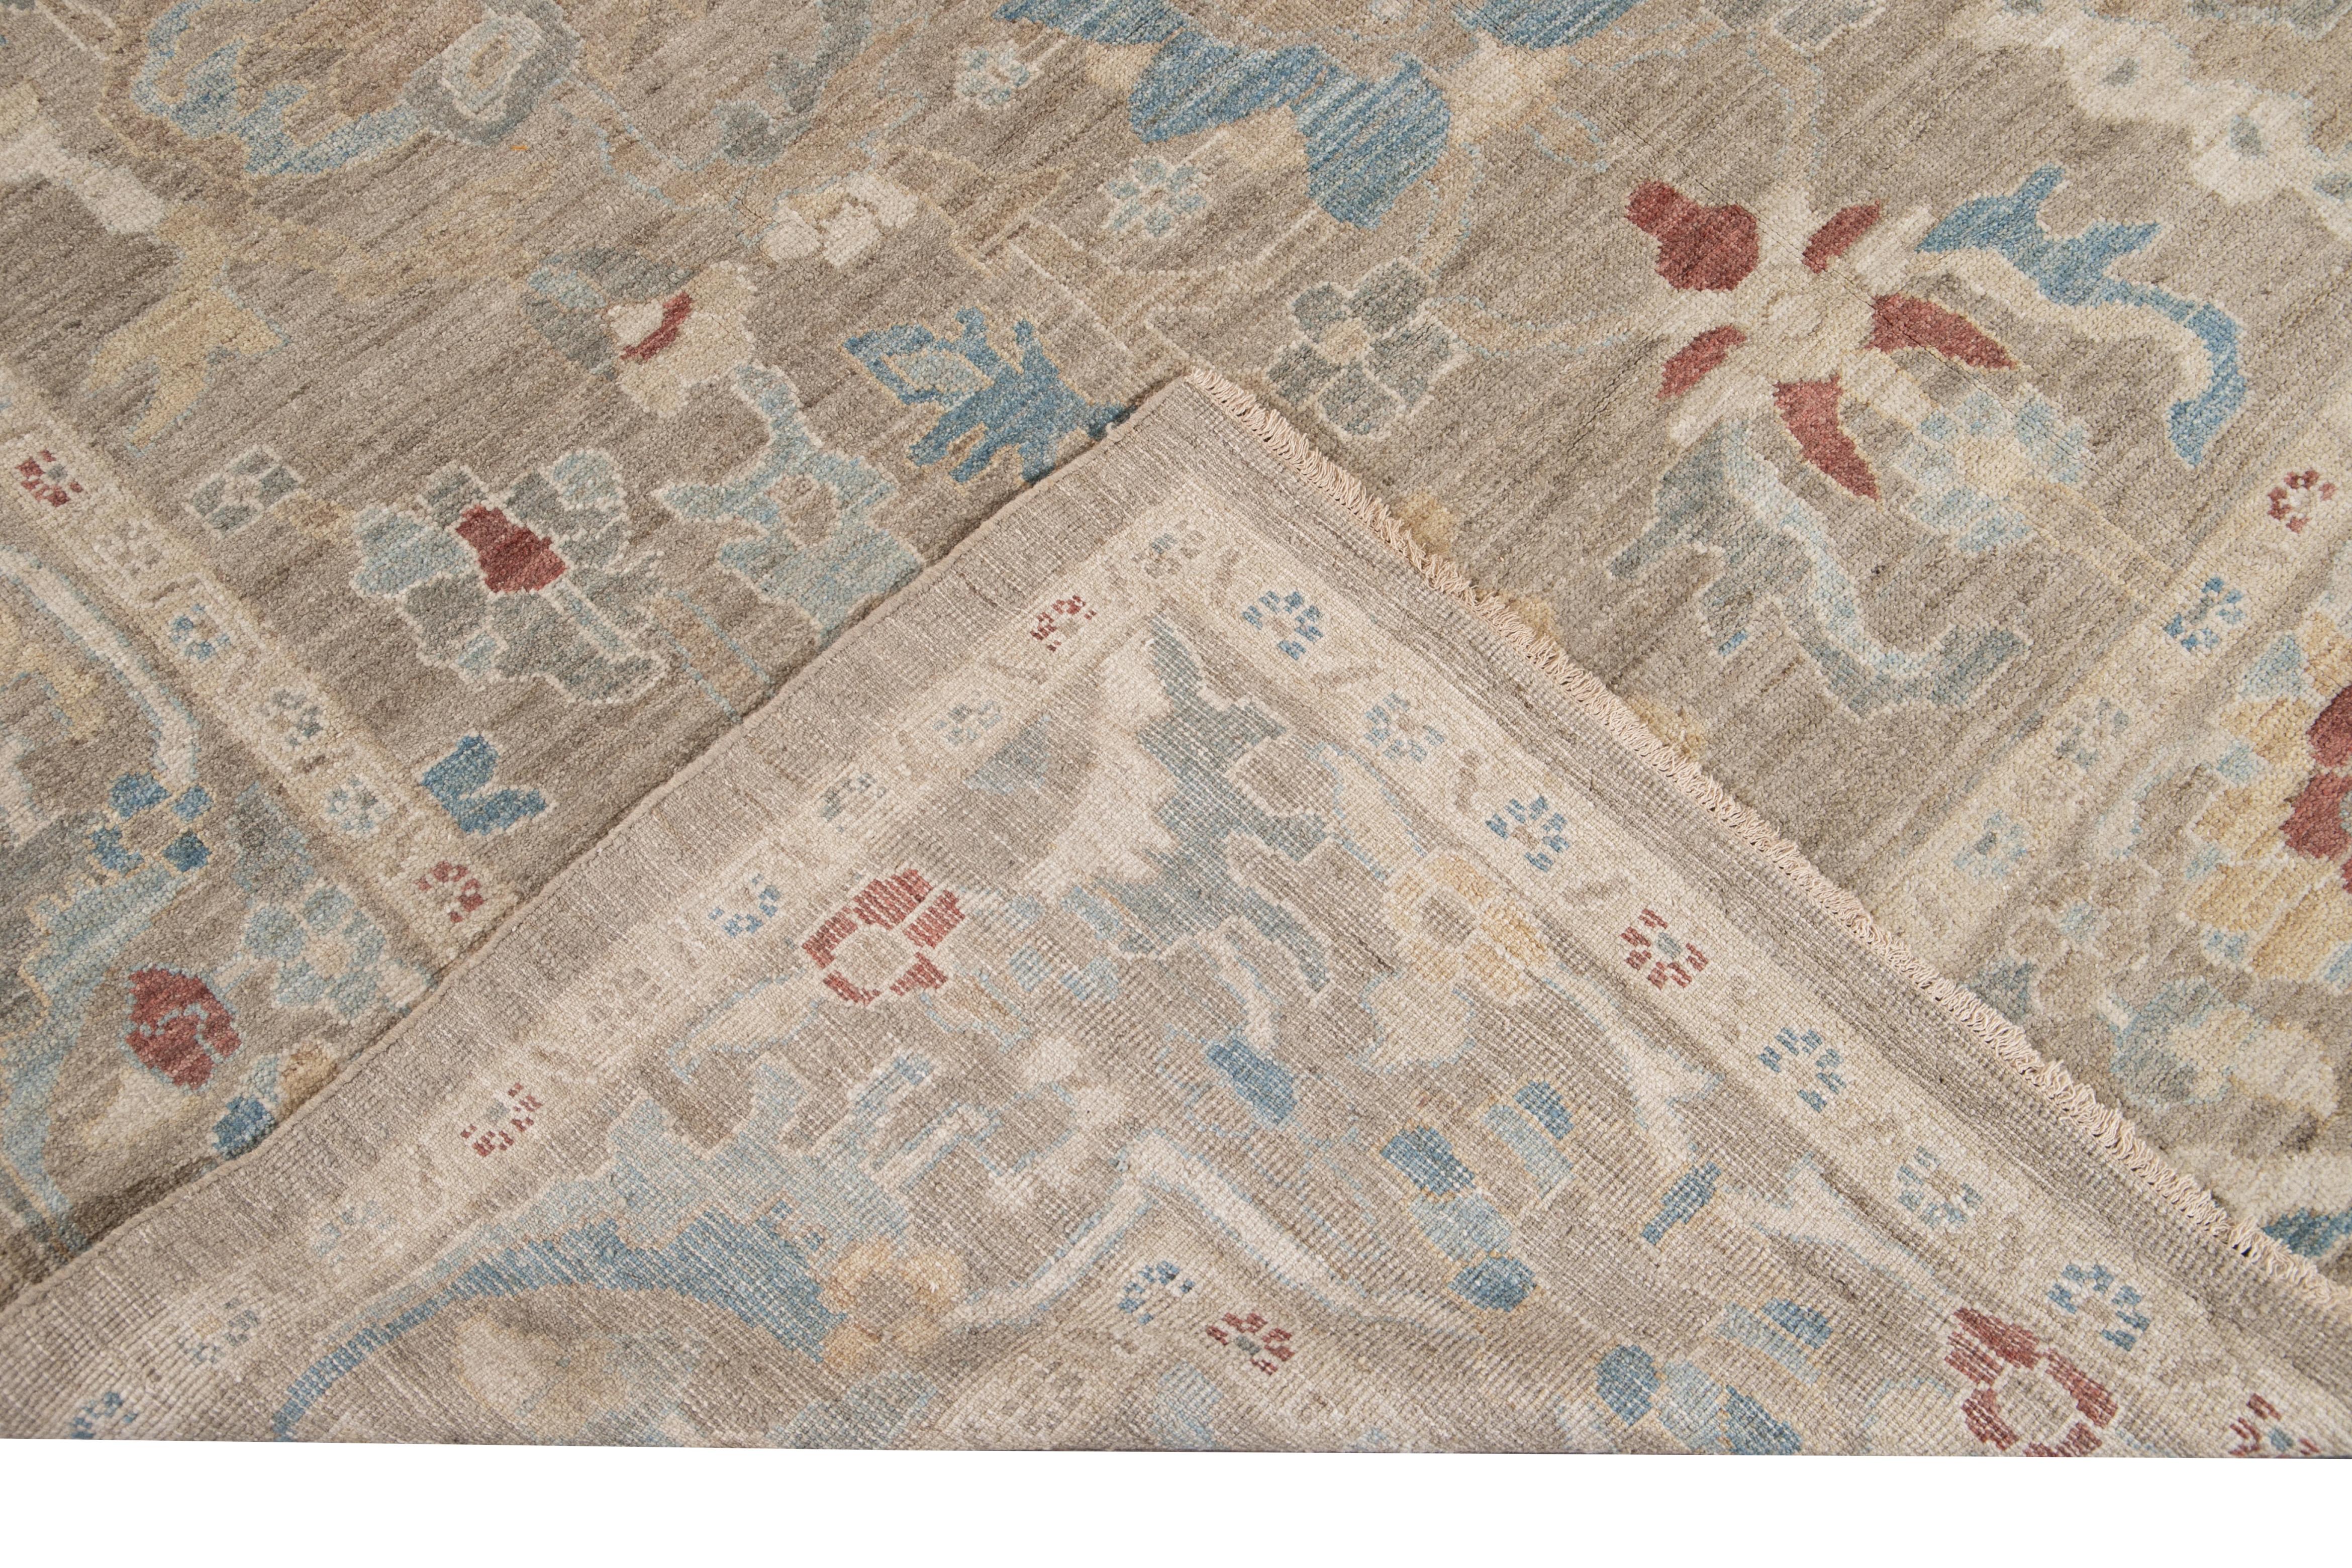 Schöner moderner Sultanabad-Teppich aus handgeknüpfter Wolle mit hellbraunem Feld. Dieser Sultanabad-Teppich hat einen mehrfarbigen Akzent in einem wunderschönen floralen All-Over-Muster im klassischen Botanical-Stil.

Dieser Teppich misst: 8'3